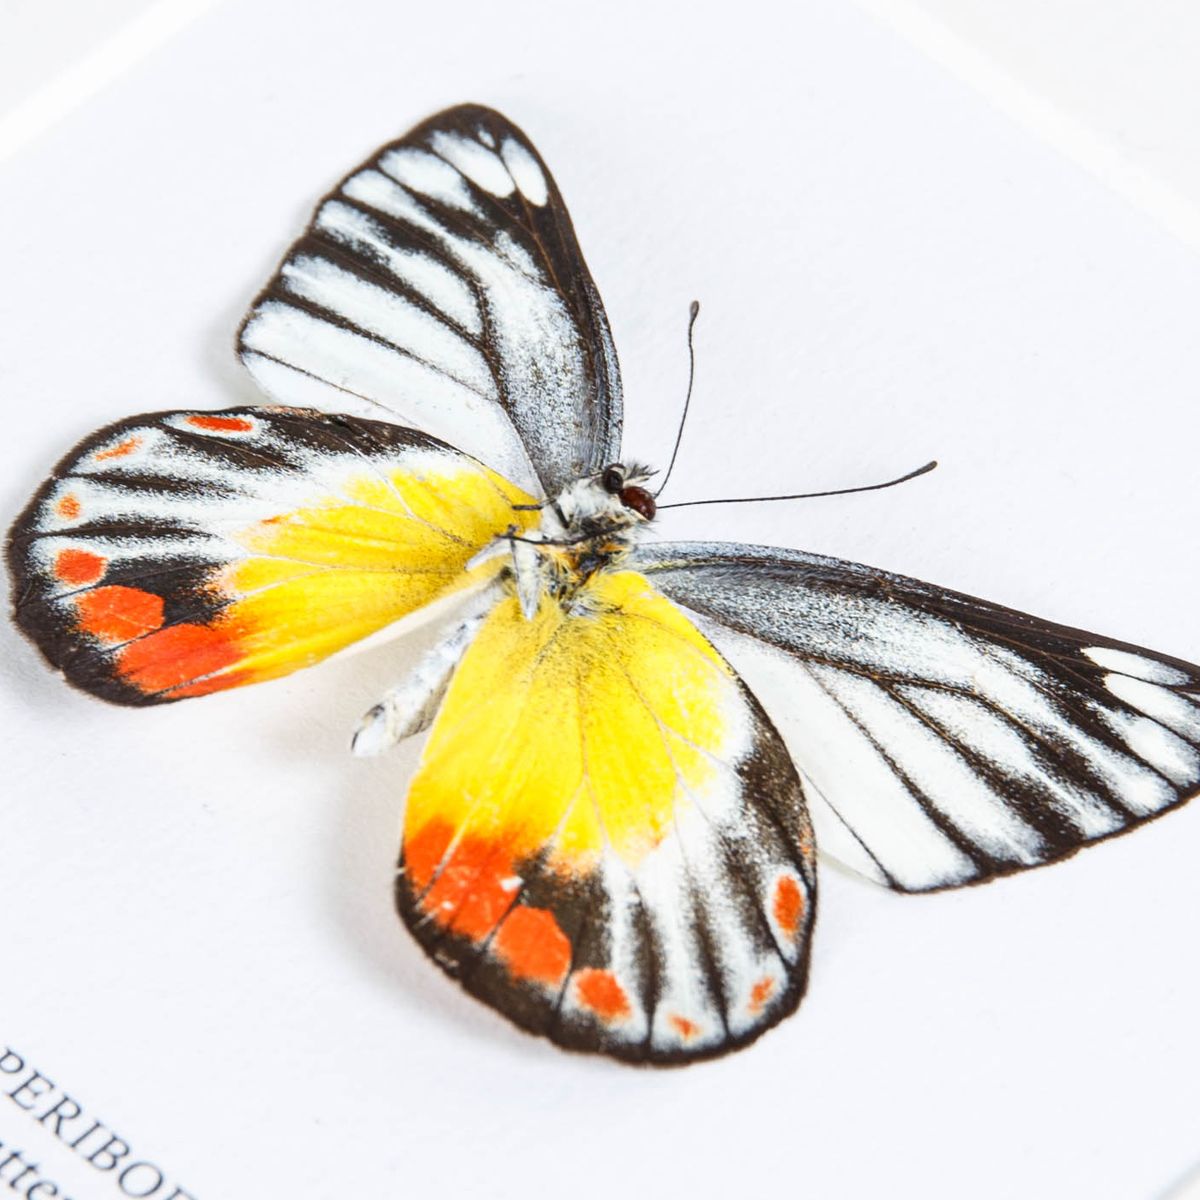 Delias Butterfly in Box Frame (Delias periboea)